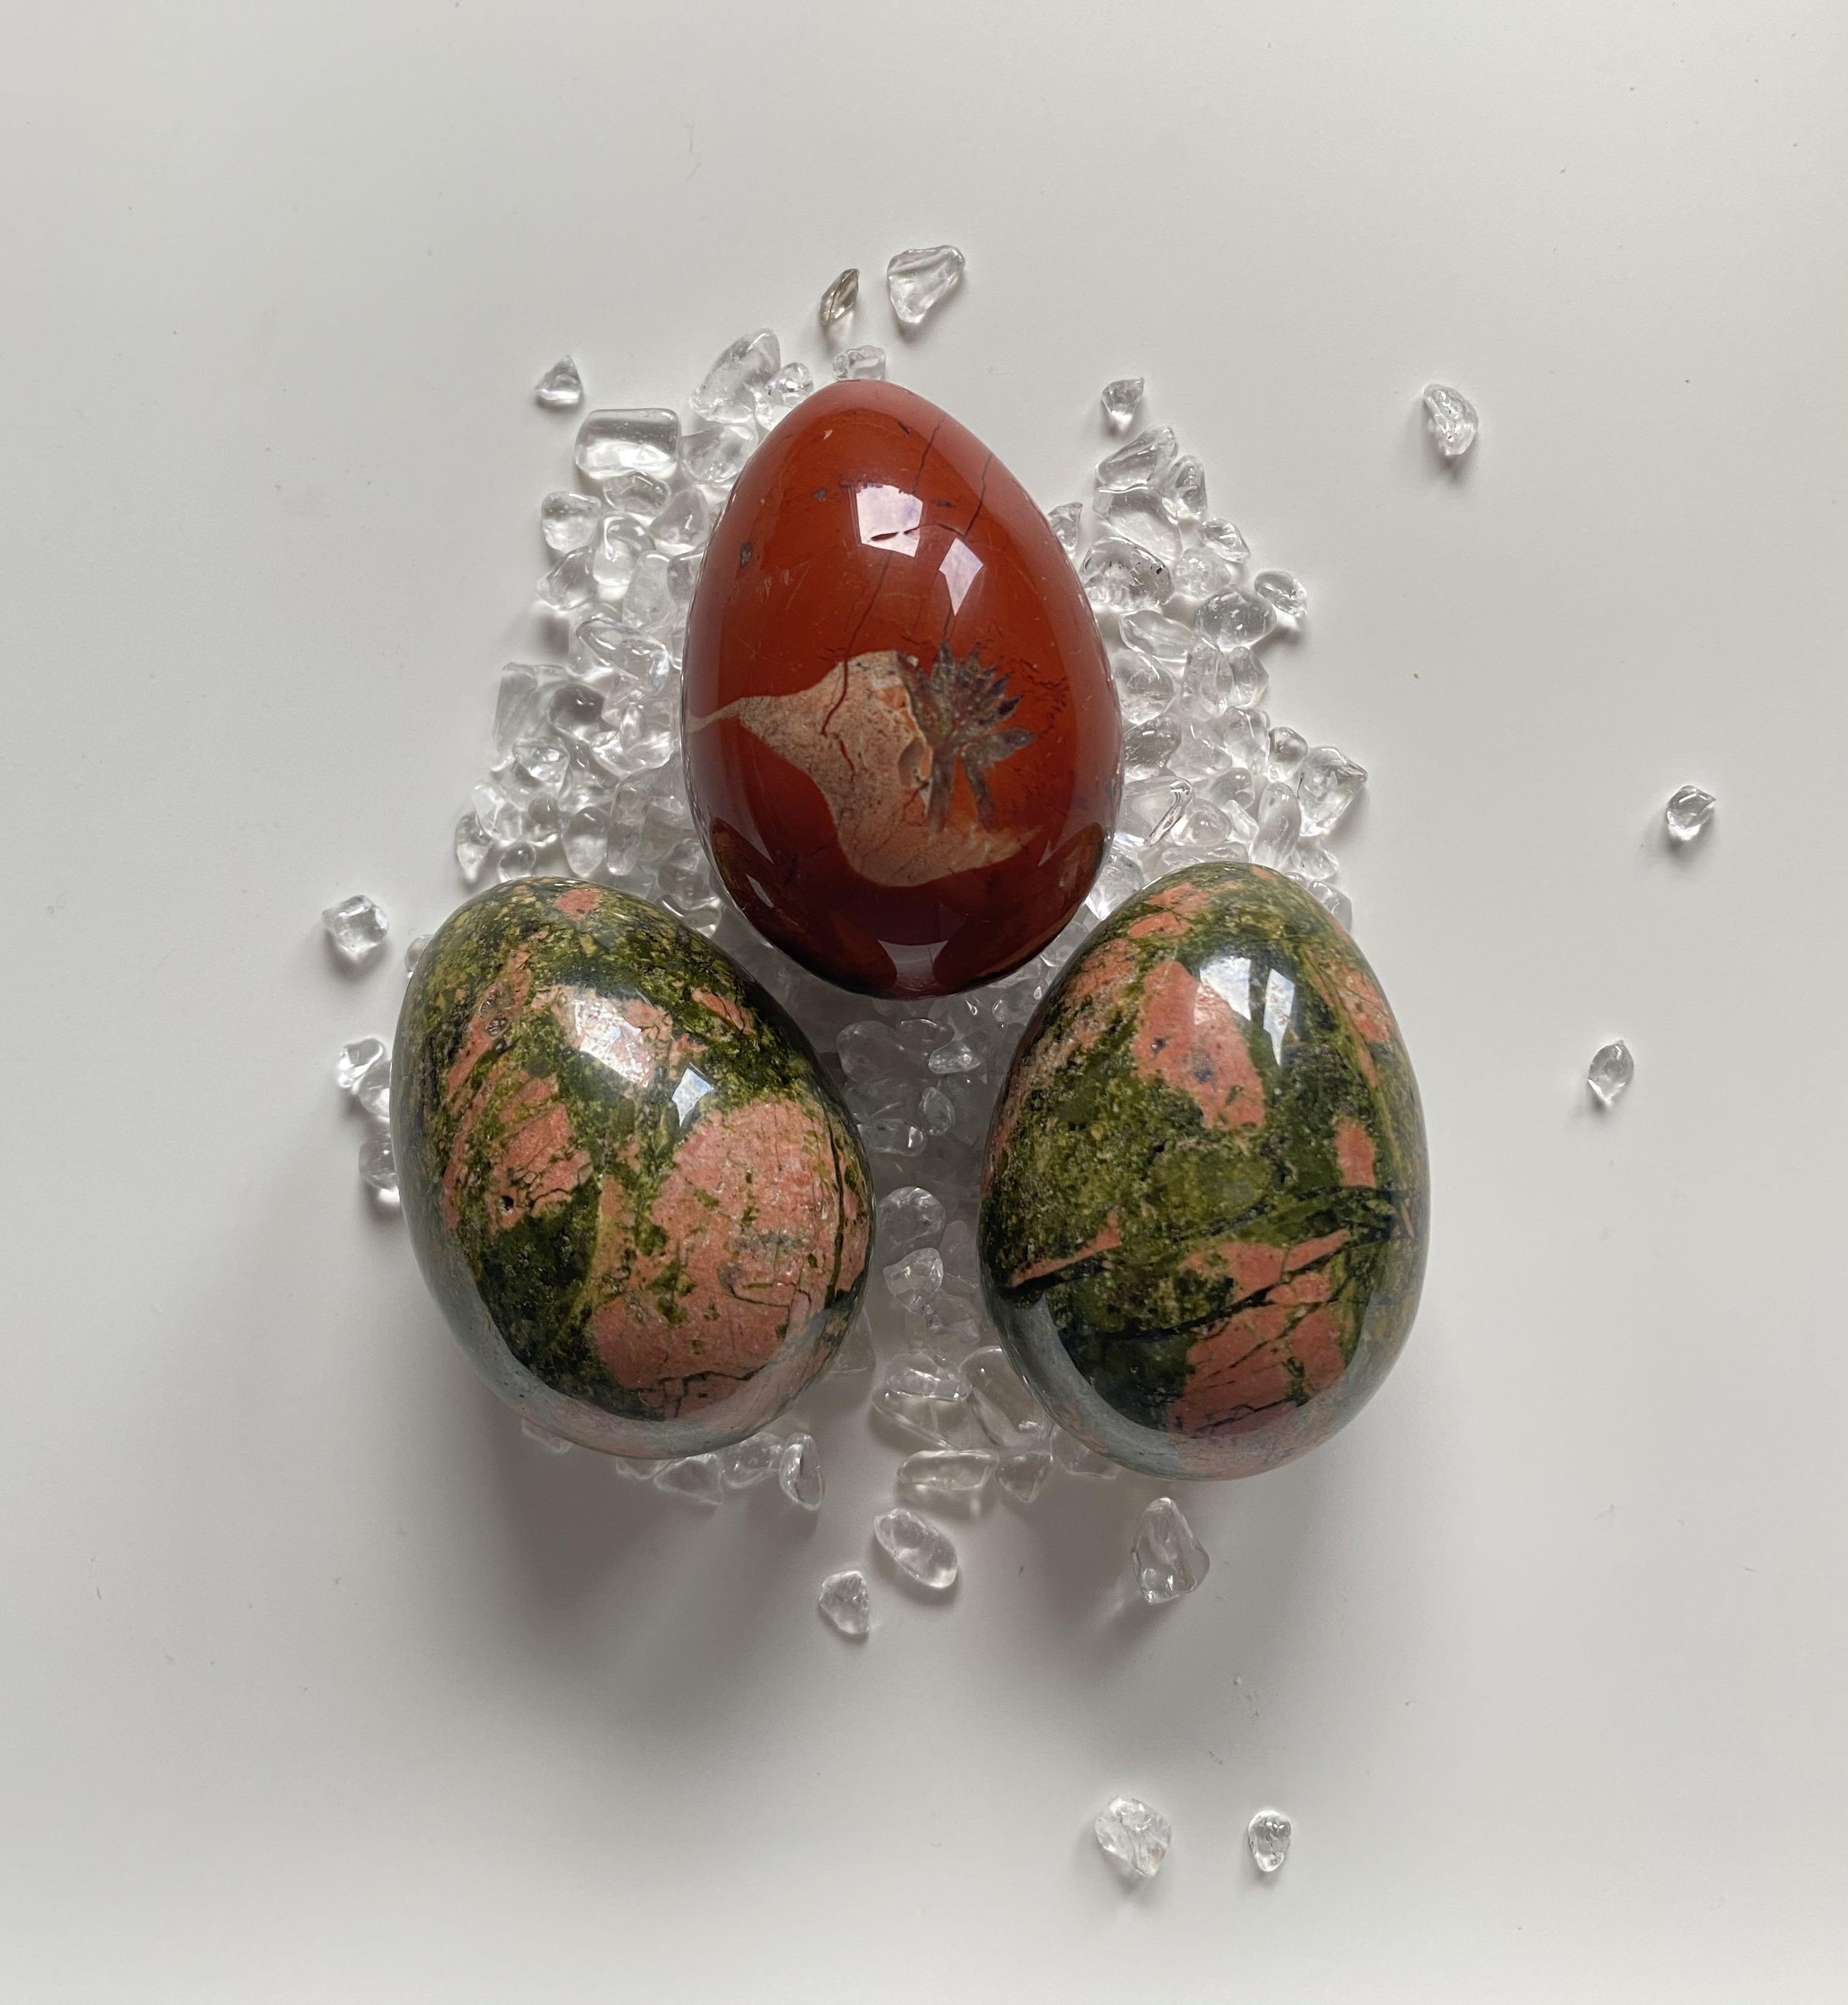 復活節 紅瑪瑙 花綠石 綠簾花崗石 Red Agate Egg Unakite Egg 女裝 飾物及配件 寶石 鑽石 水晶 Carousell